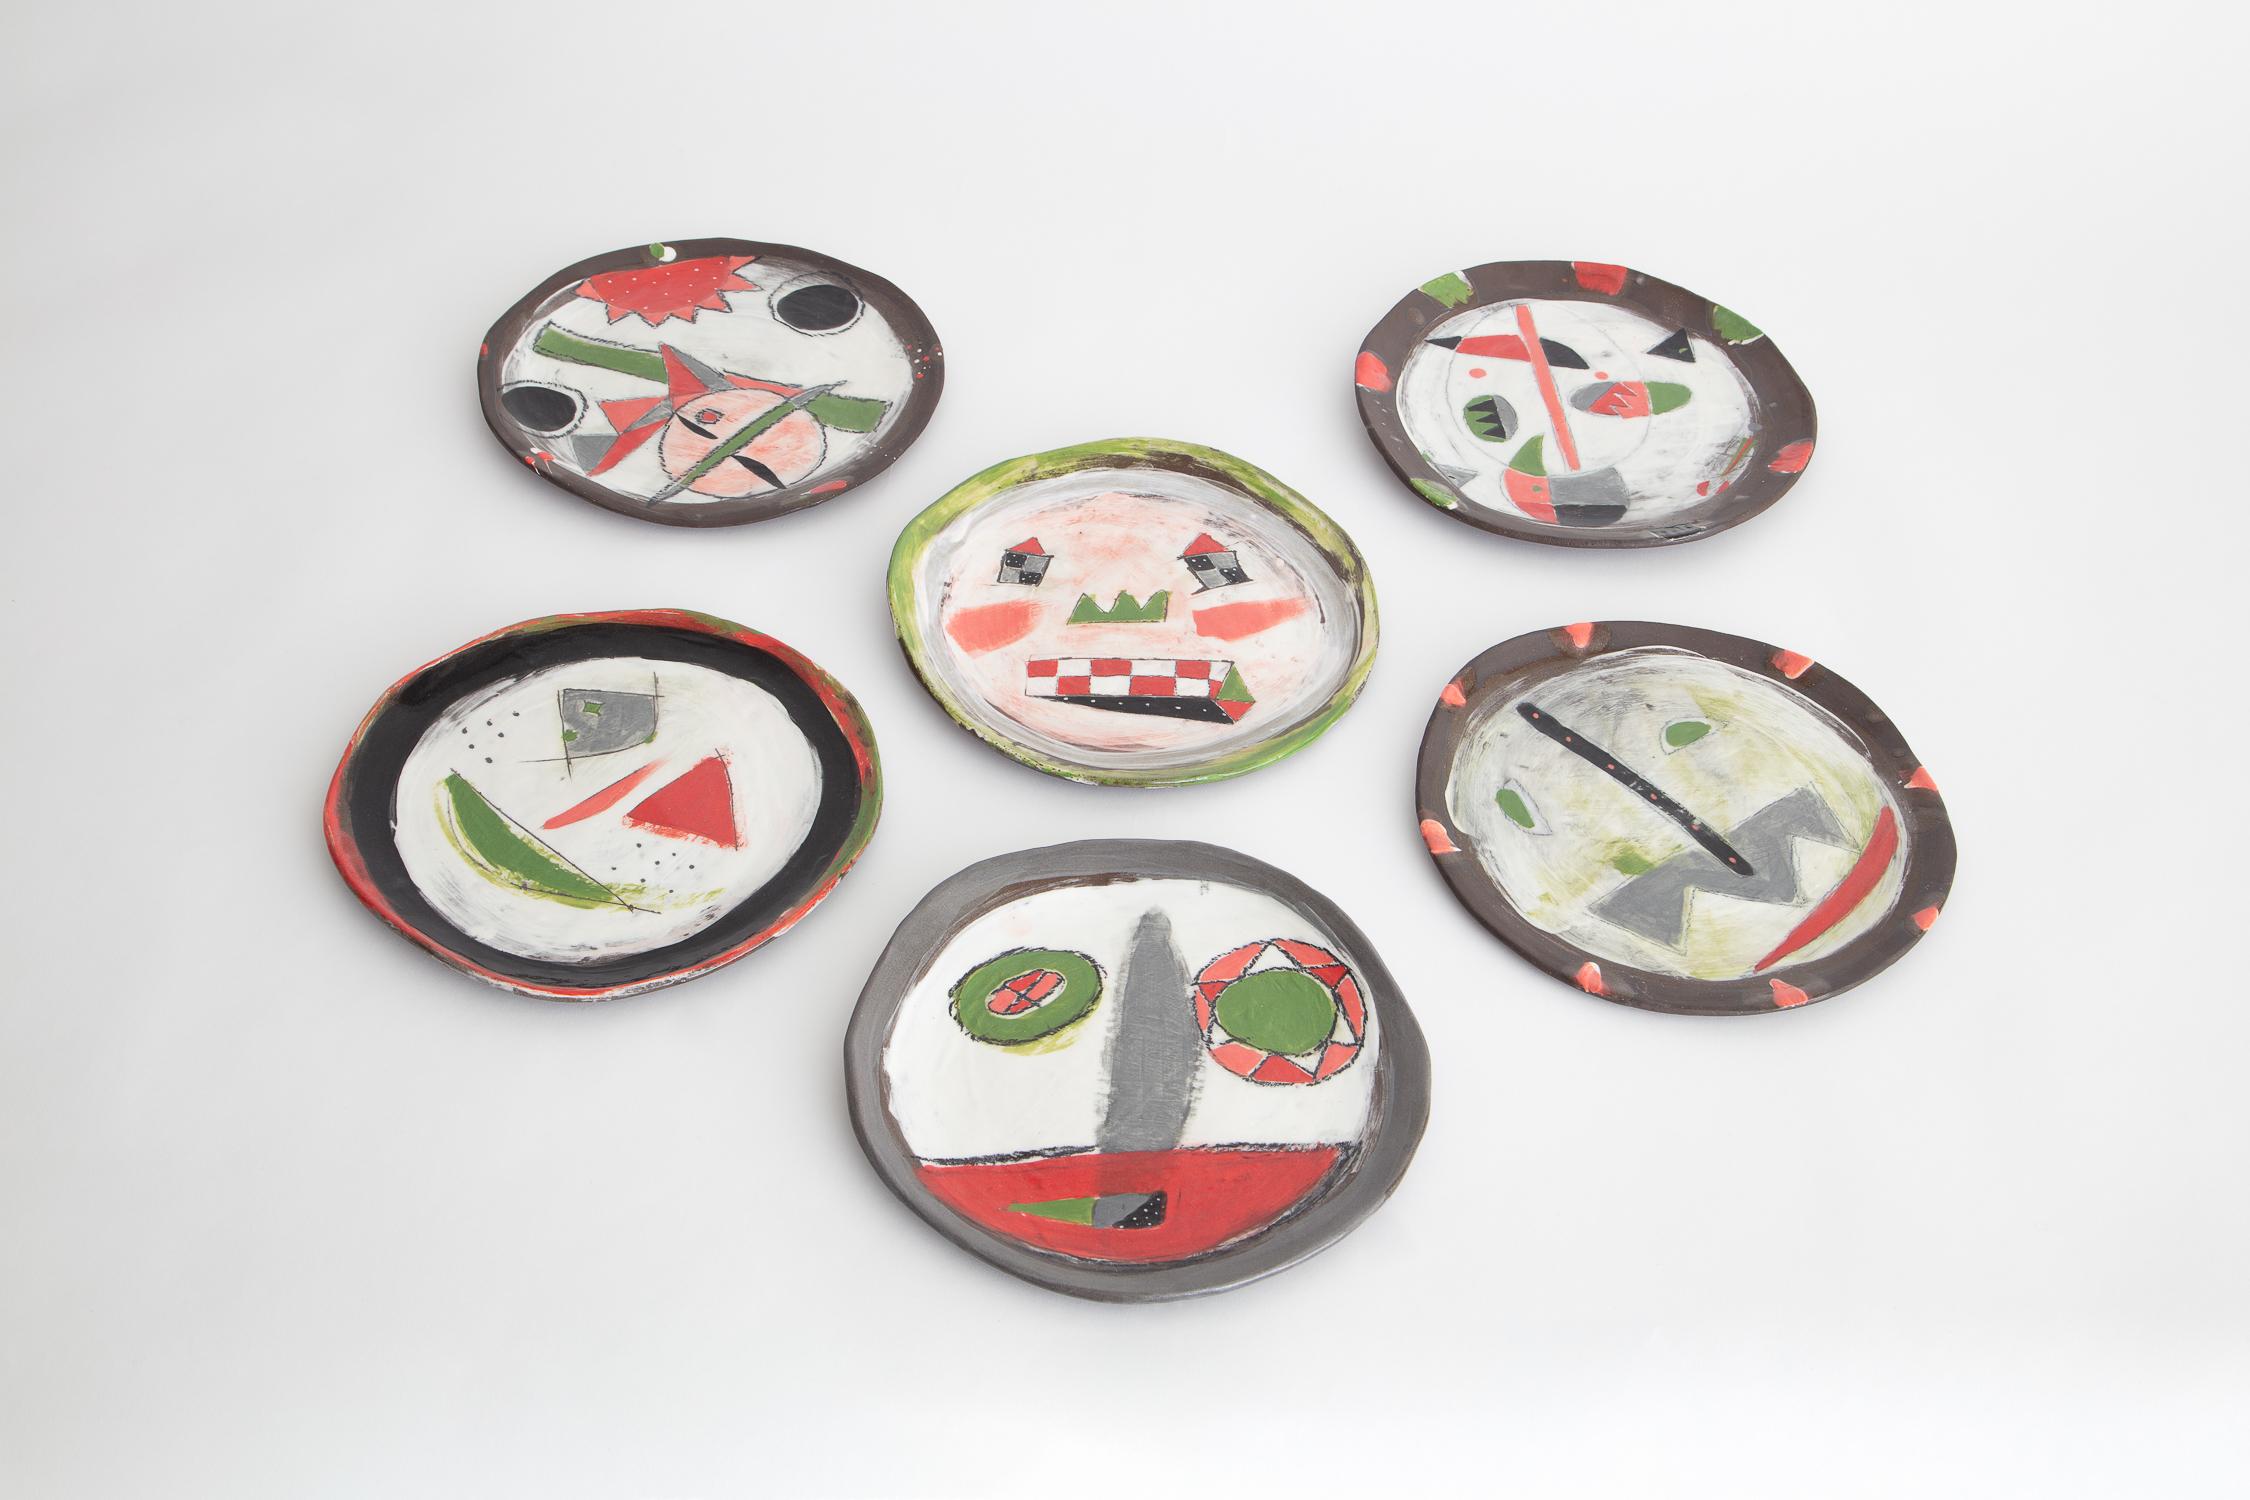 Pour le spectacle d'inspiration surréaliste The Dinner Guests de Fortmakers en 2019, l'artiste céramiste Shino Takeda a fabriqué et peint à la main une série d'assiettes ludiques et anthropomorphes, chacune ornée d'un visage unique.

Fait à la